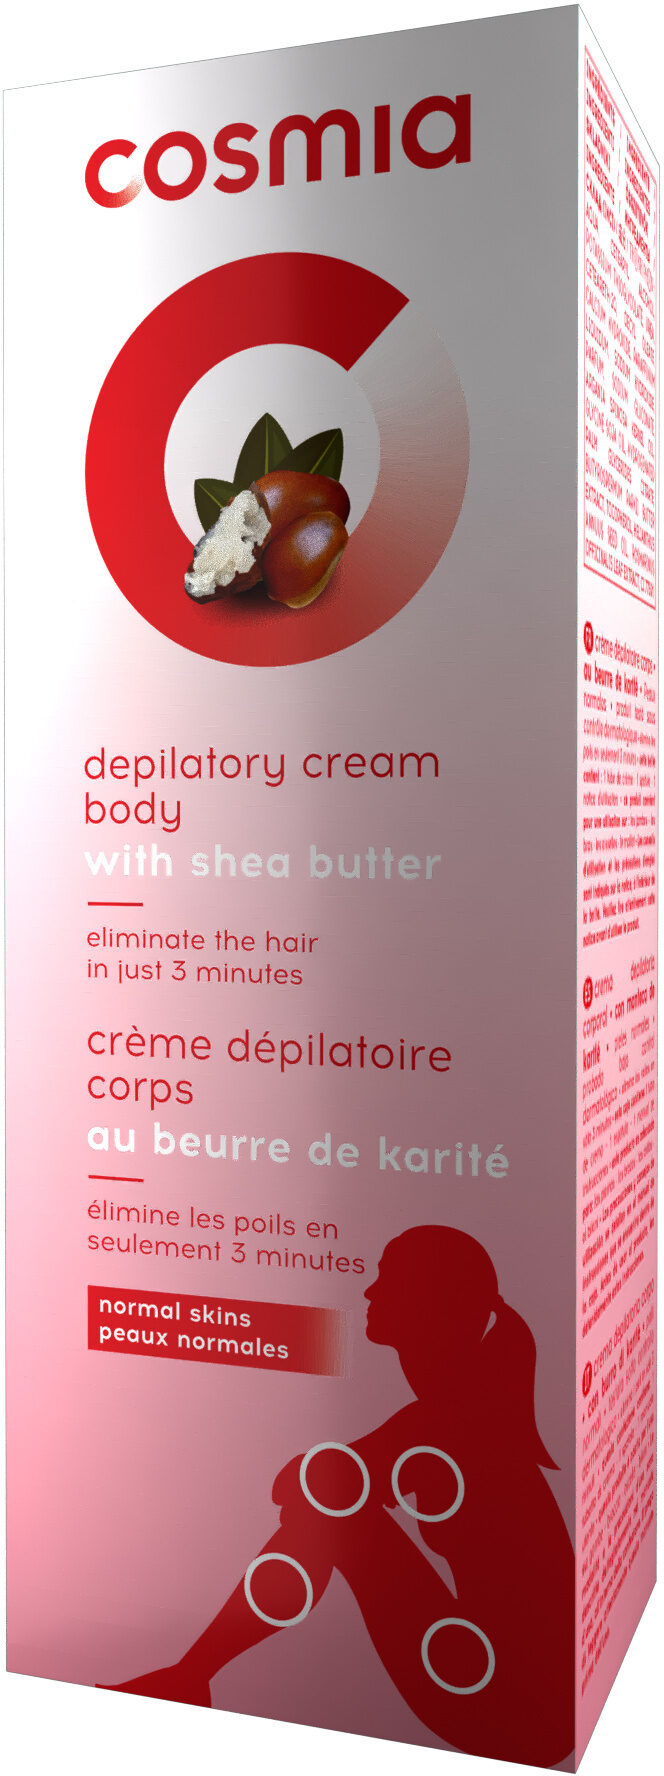 Crème dépilatoire corps au beurre de karité - Produit - fr